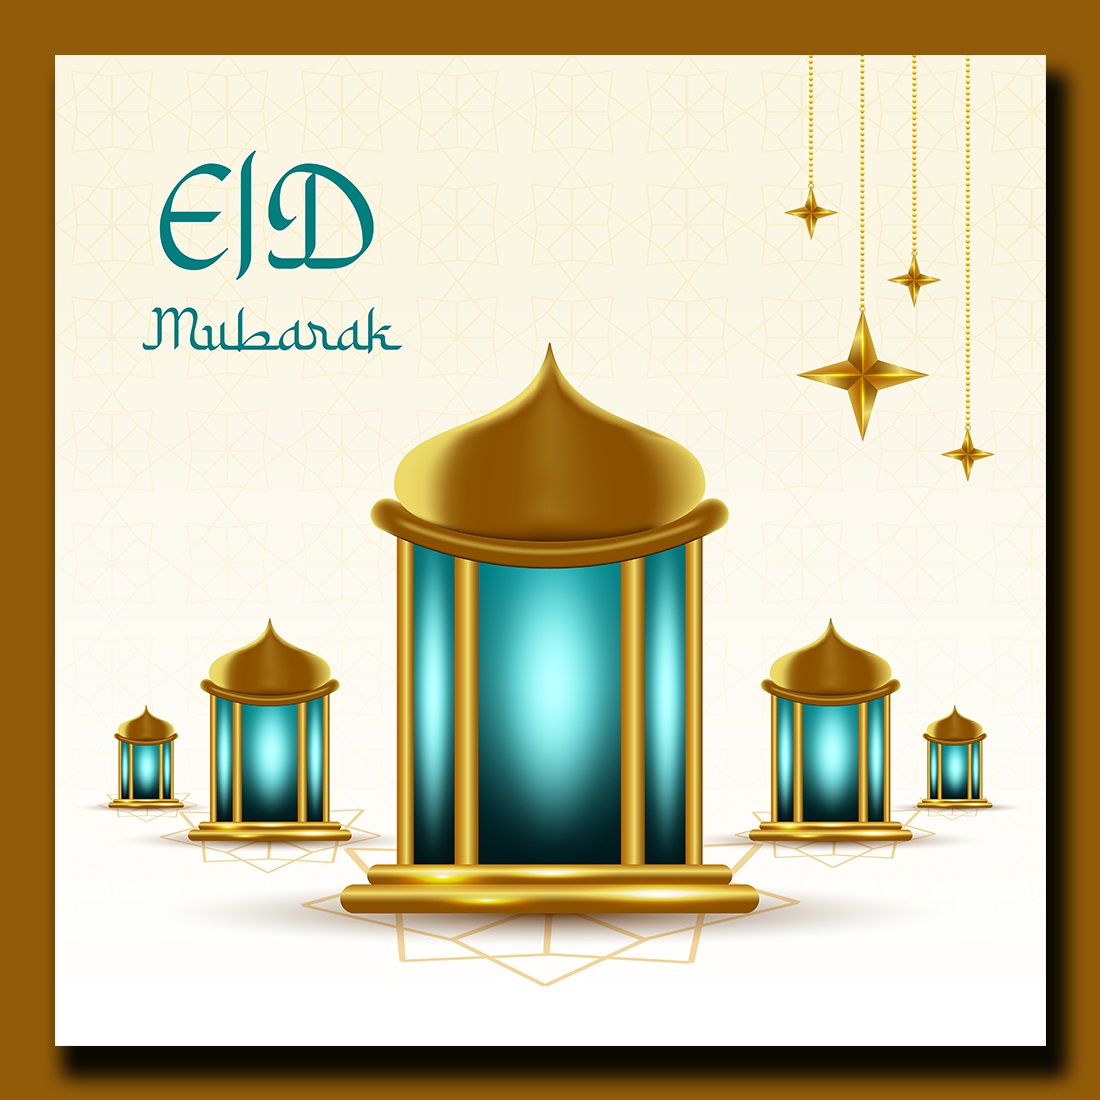 Eid Mubarak Greetings Social Media Post preview image.